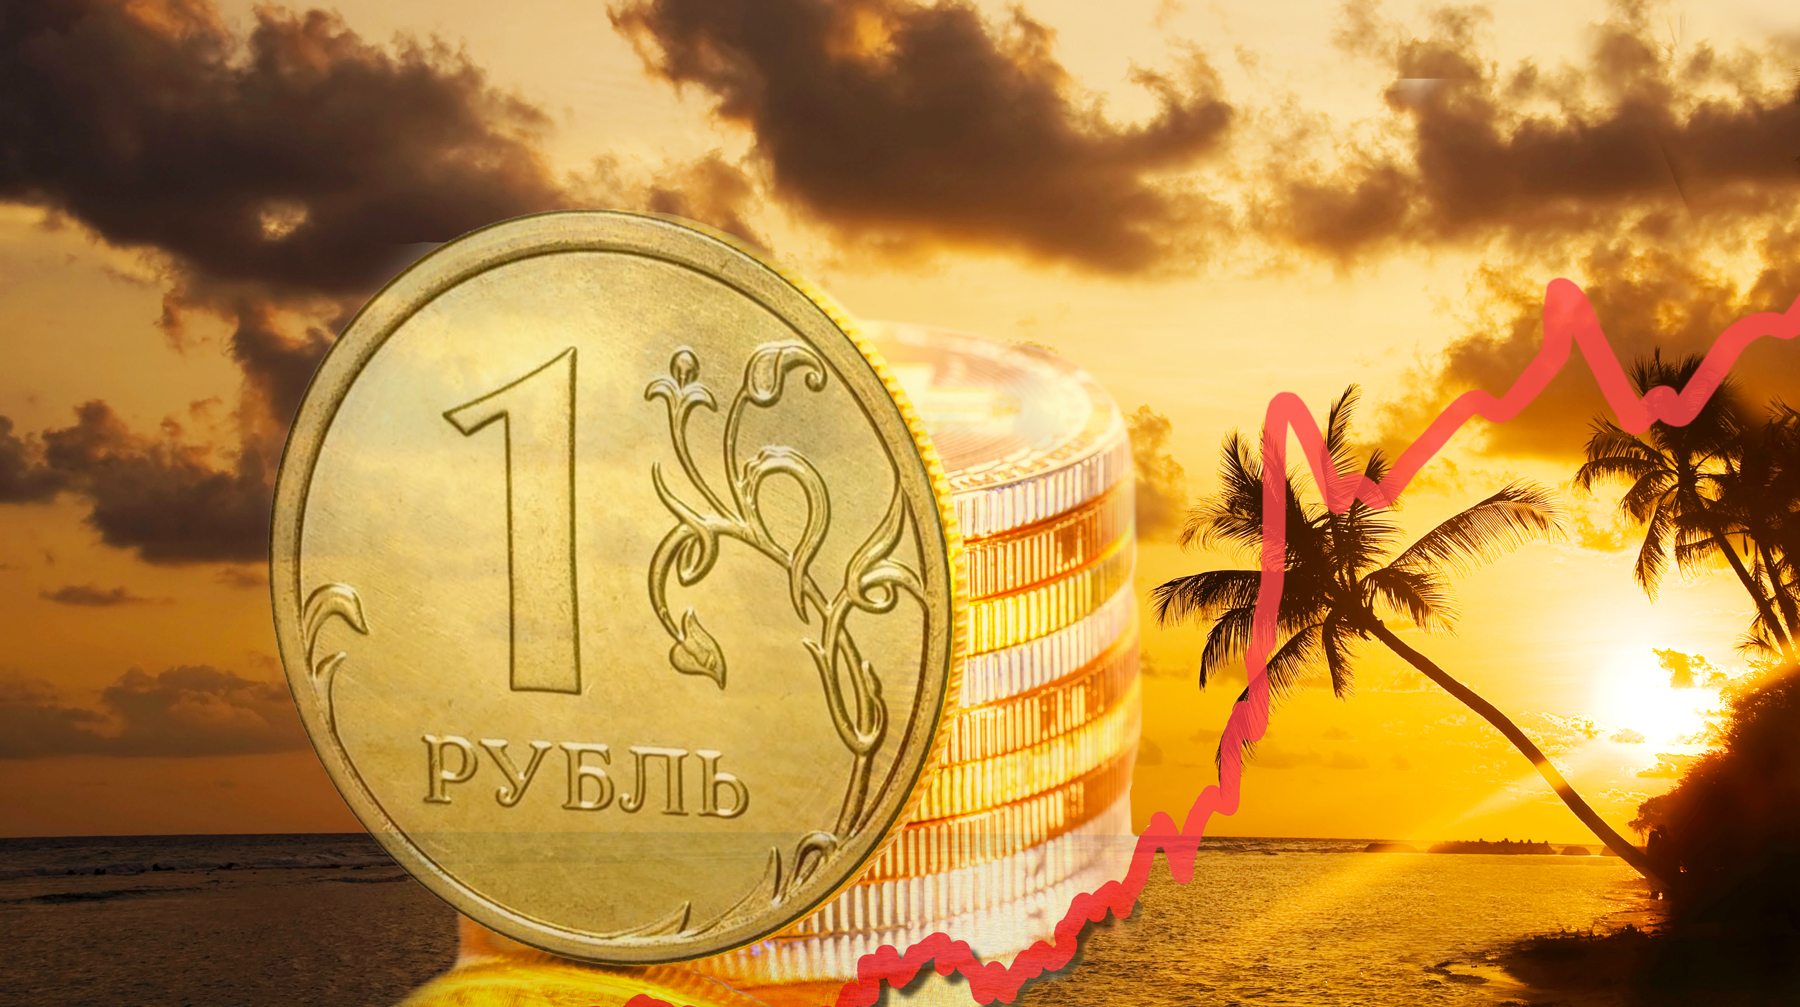 По данным Российского союза туриндустрии, после обвала рубля продажи заграничных туров снизились на 30-40% Коллаж: © Daily Storm